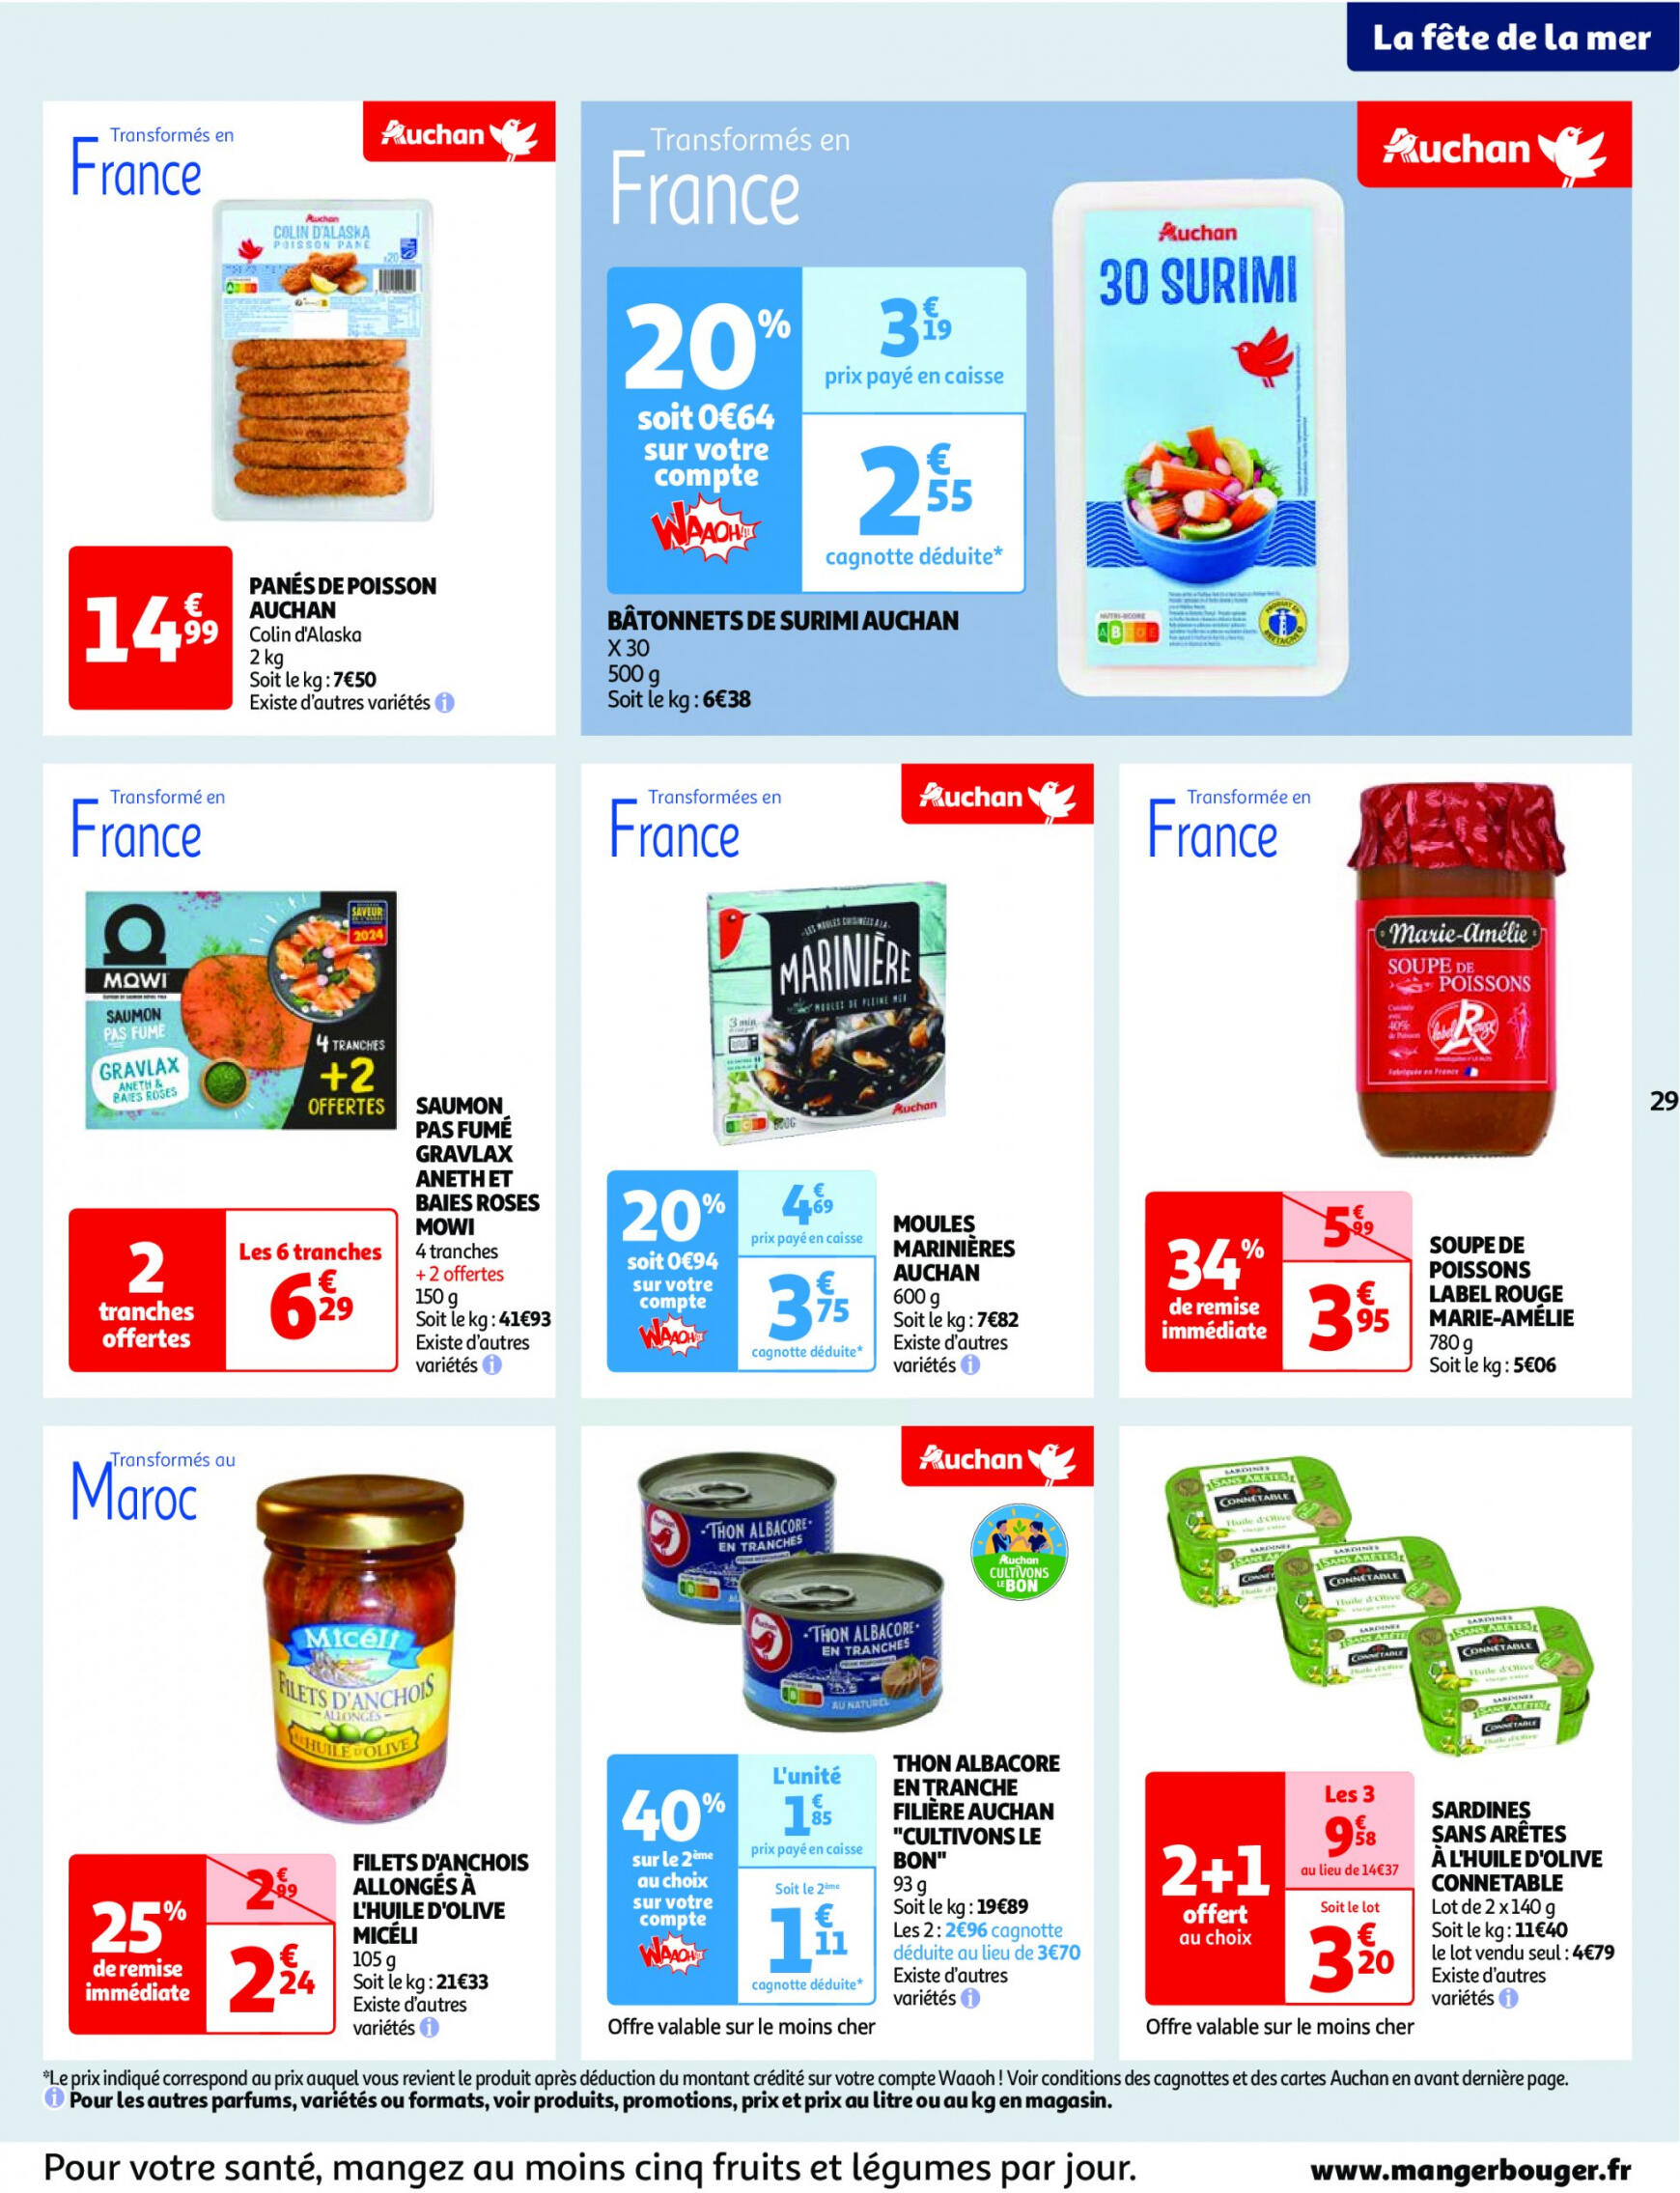 auchan - Prospectus Auchan actuel 14.05. - 21.05. - page: 29